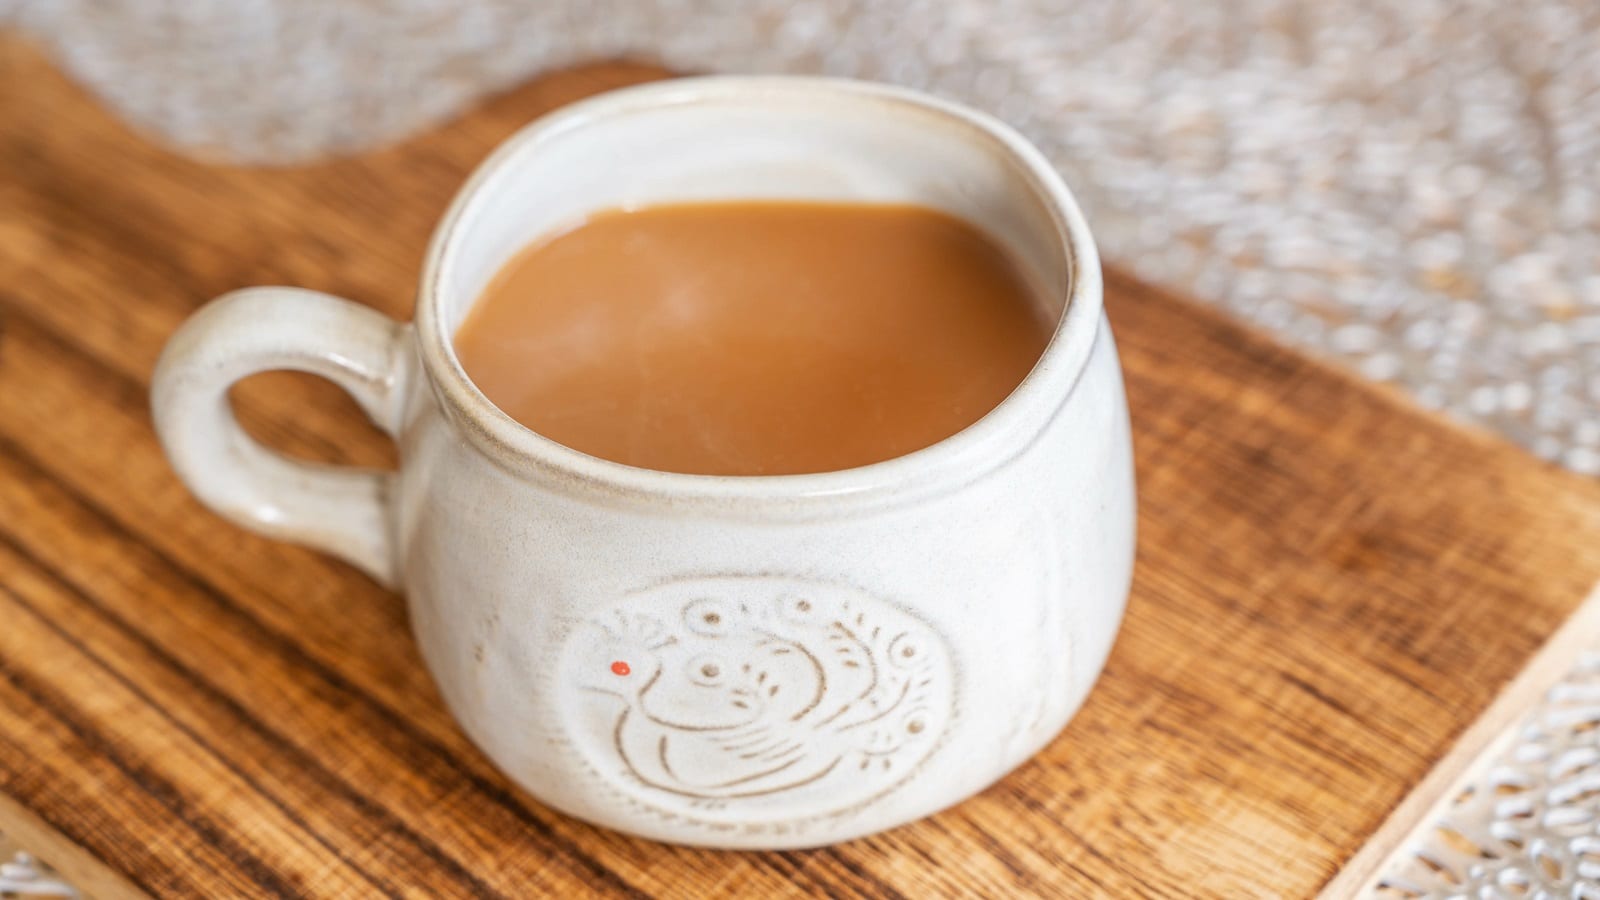 Eine Tasse mit Hong Kong Milk Tea auf einem Brett.